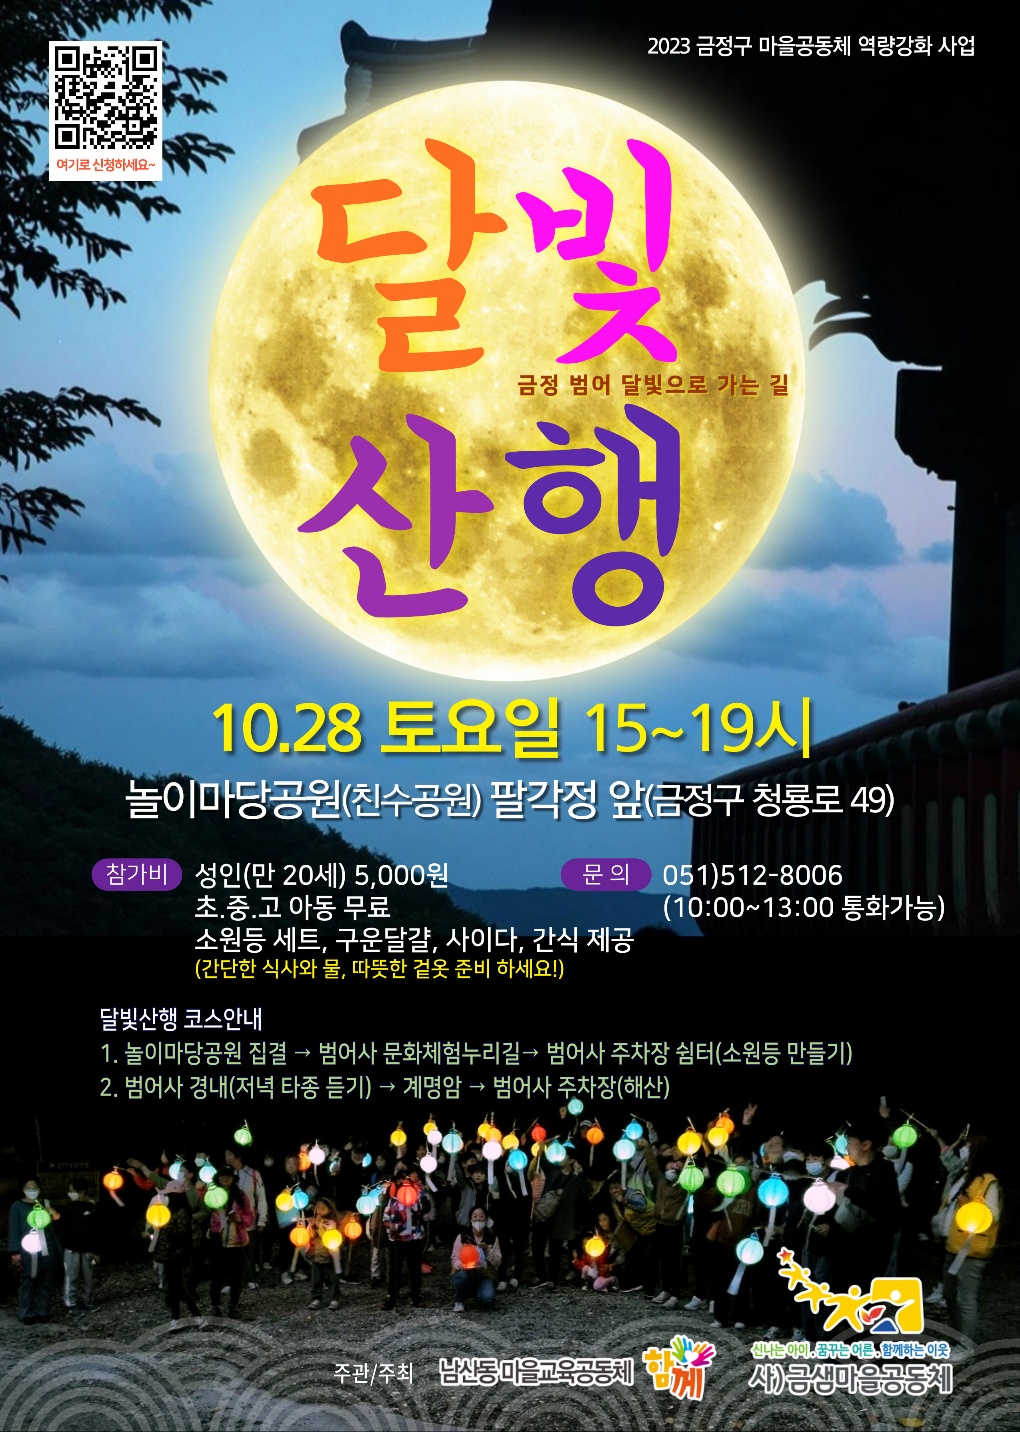 (남산동 마을교육공동체 함께) 달빛 산행에 초대합니다. ^^